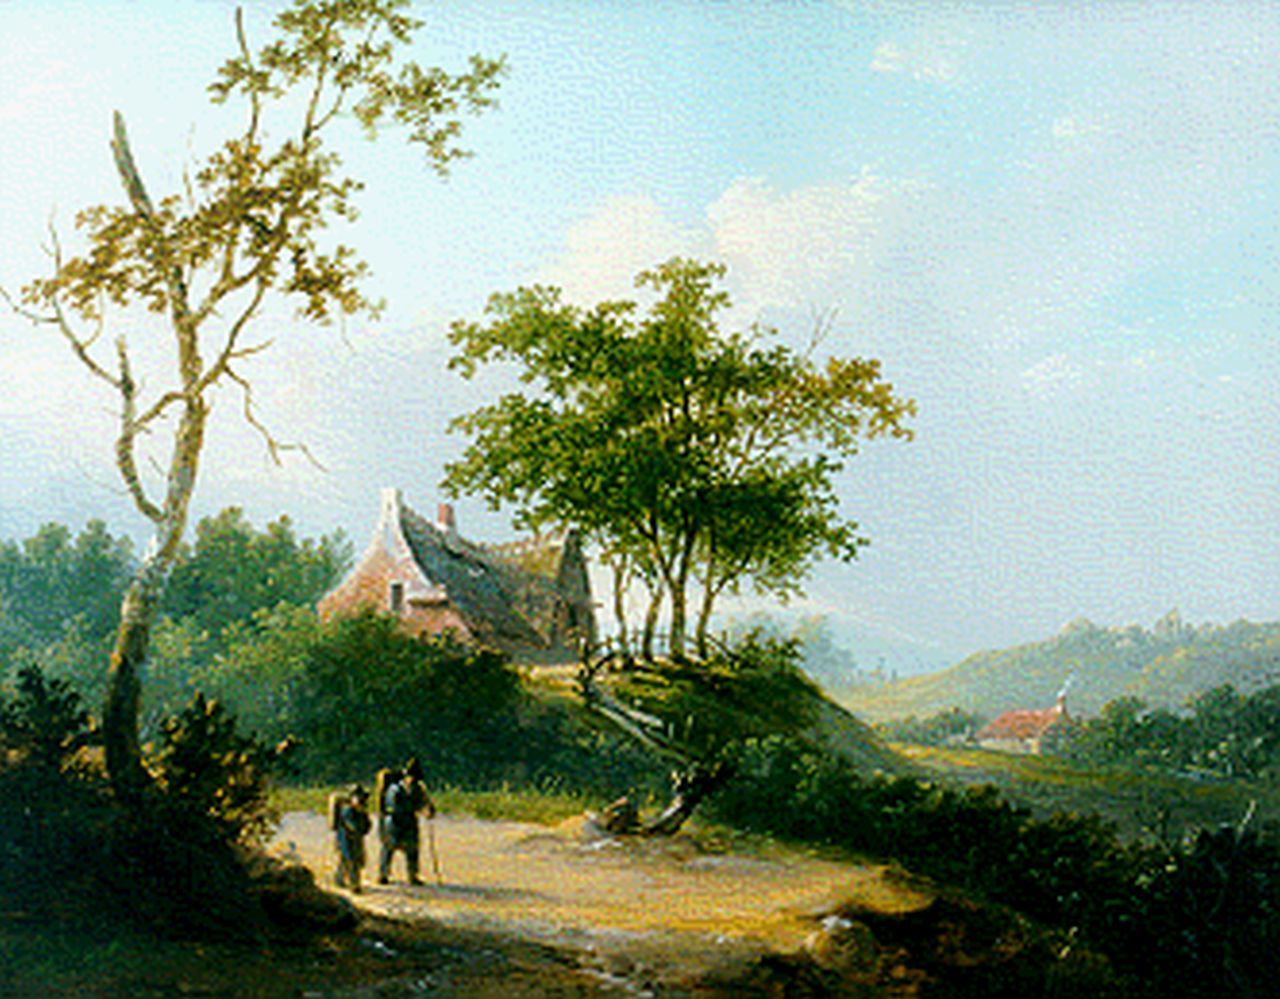 Stok J. van der | Jacobus van der Stok, Reizigers in panoramisch zomerlandschap, olieverf op paneel 25,7 x 32,6 cm